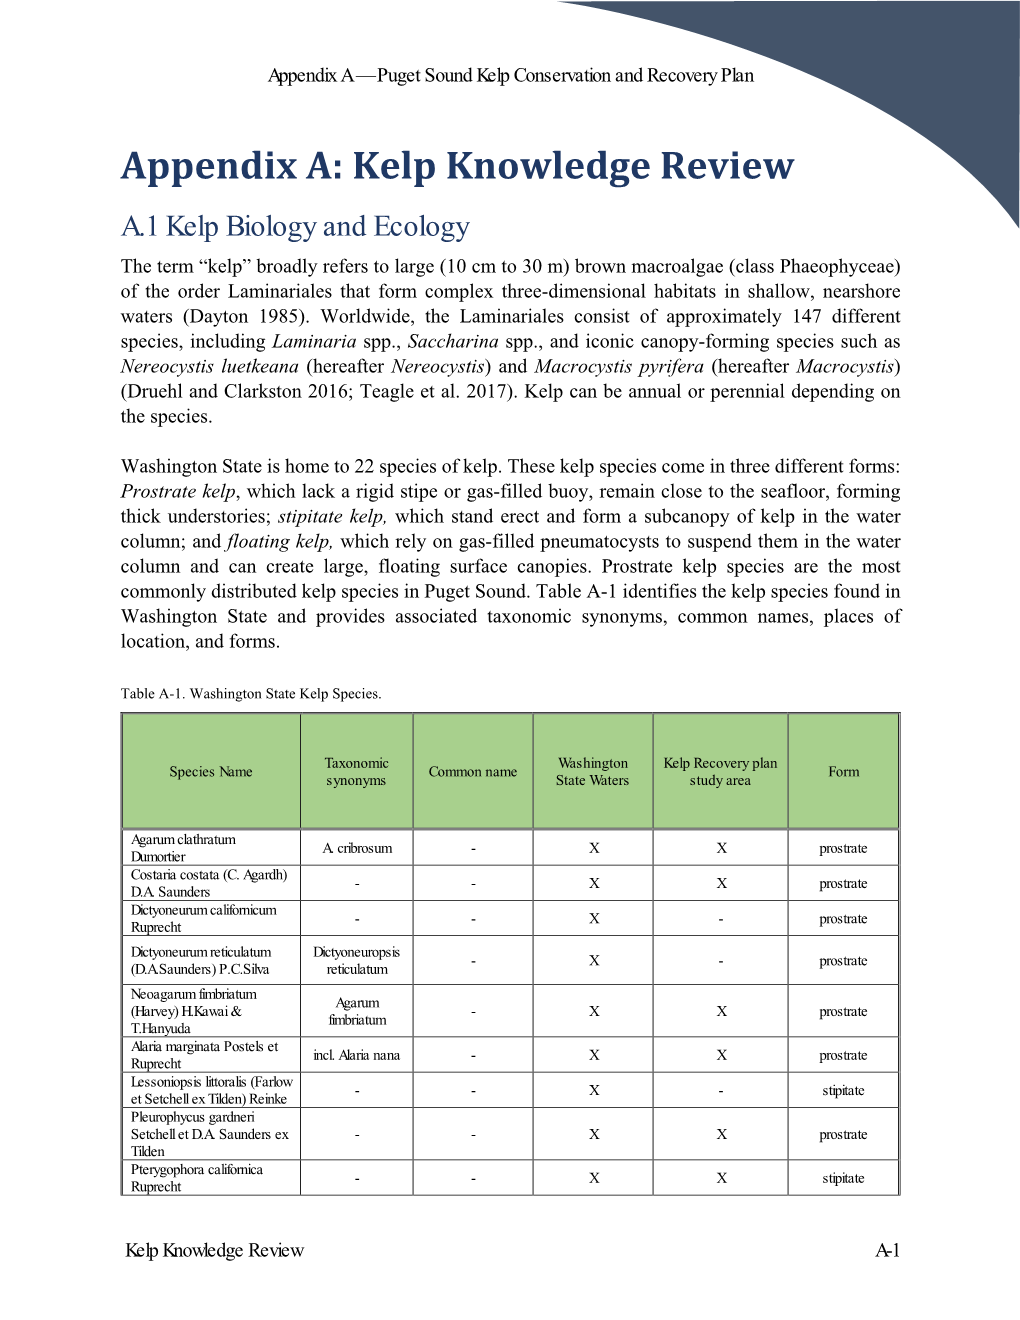 Appendix A: Kelp Knowledge Review